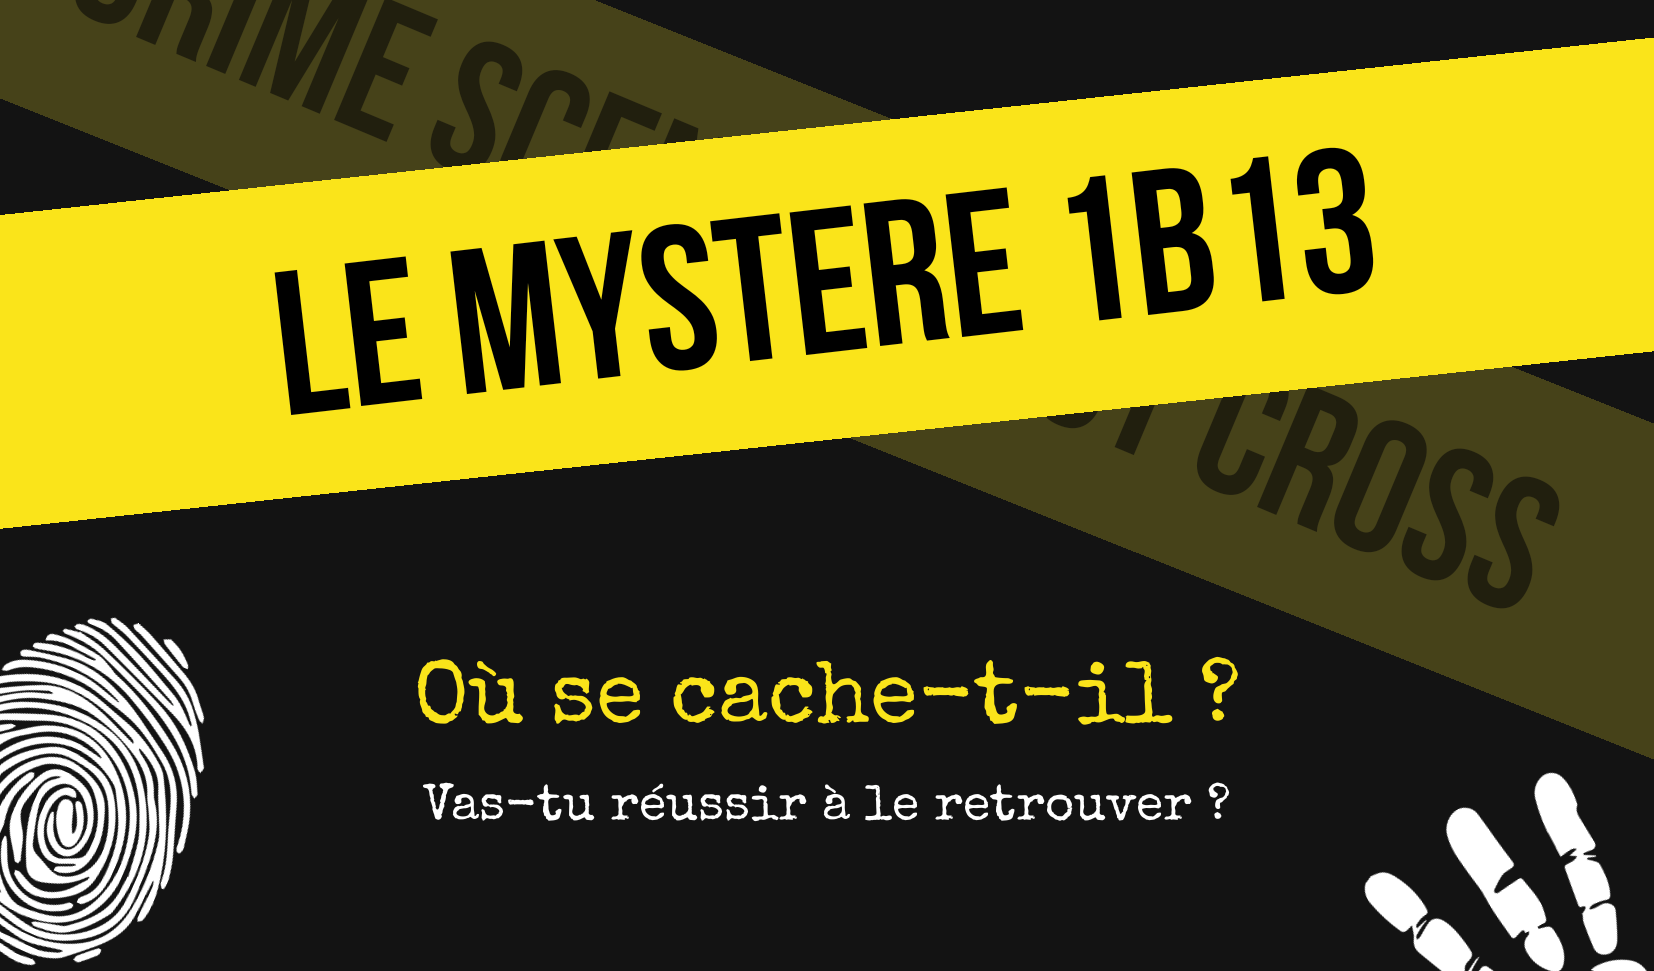 Le mystère 1B13